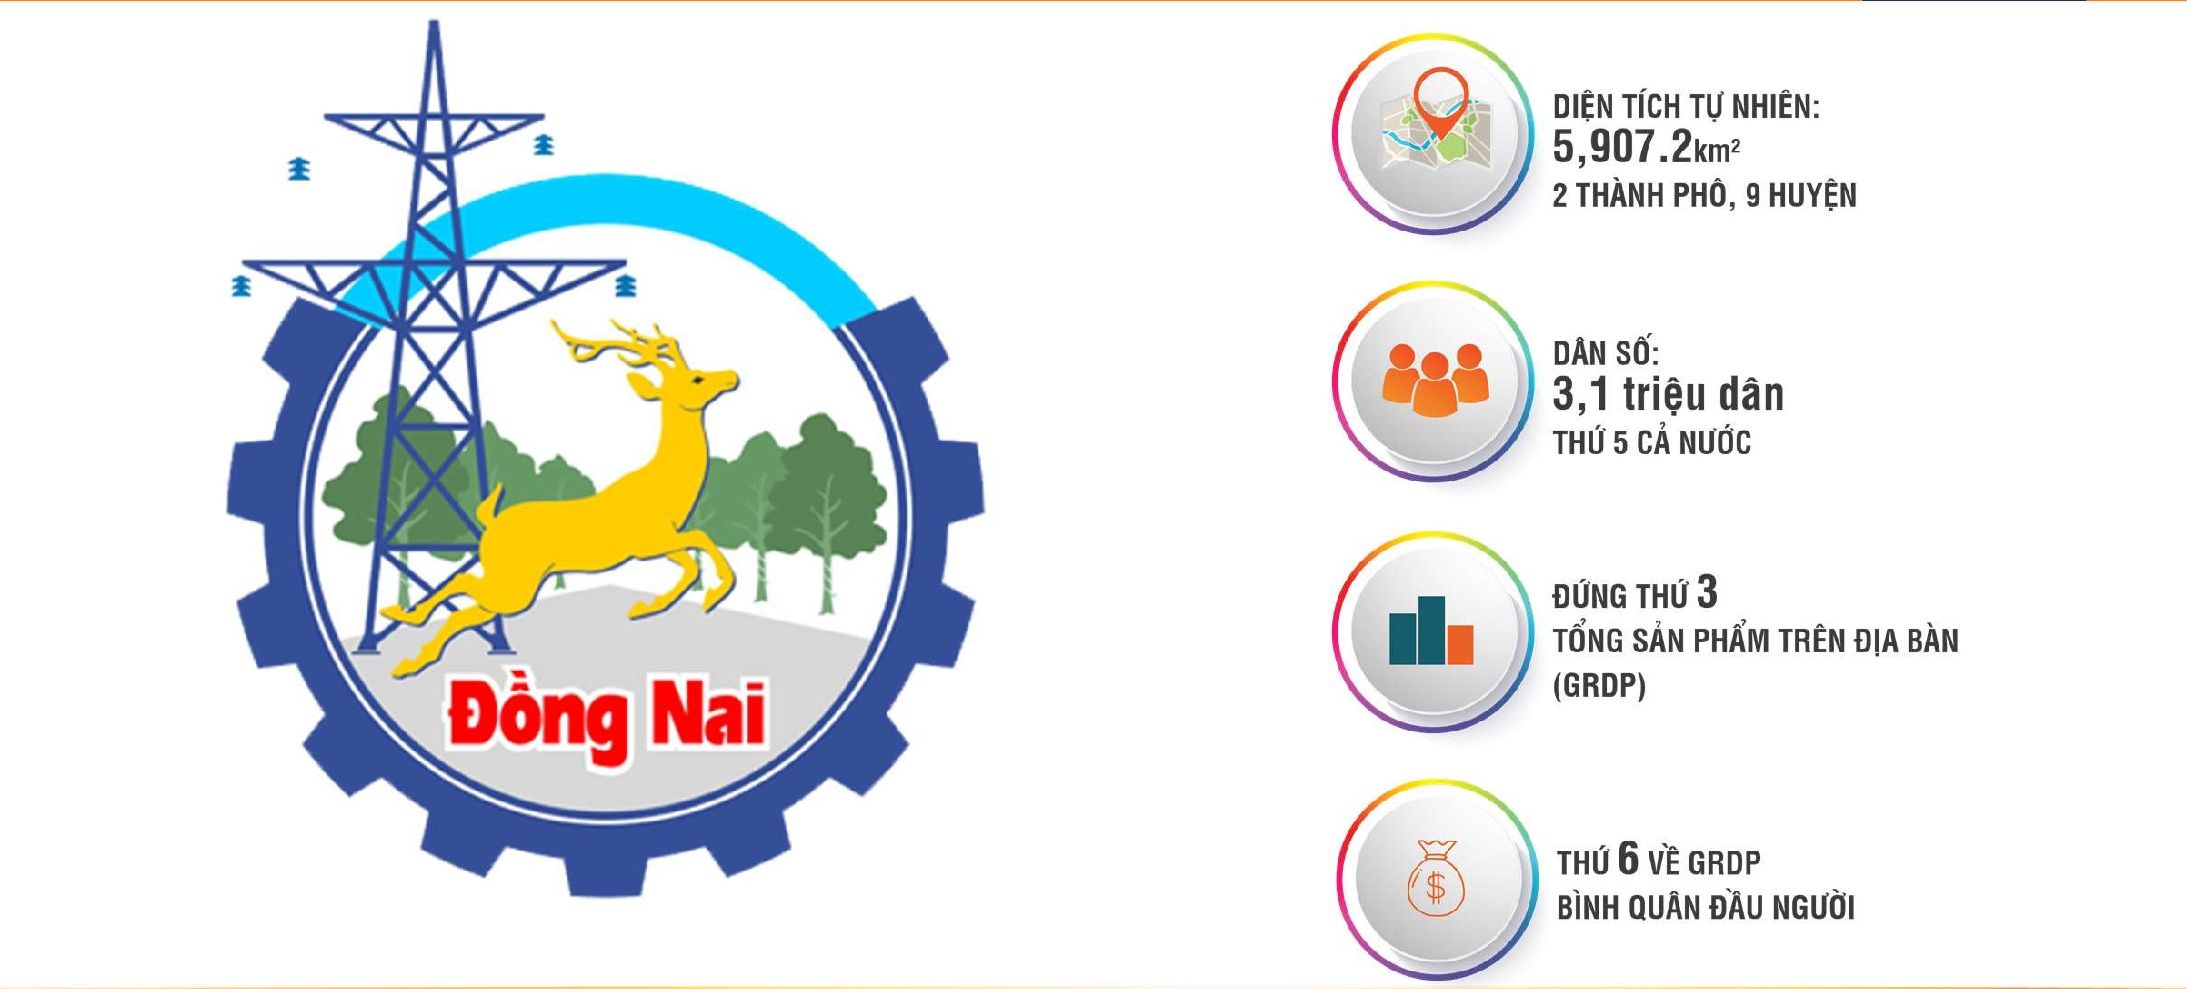 Diện tích và dân số của tỉnh Đồng Nai, đứng thứ 3 tổng sản phẩm trên địa bàn (GRDP)